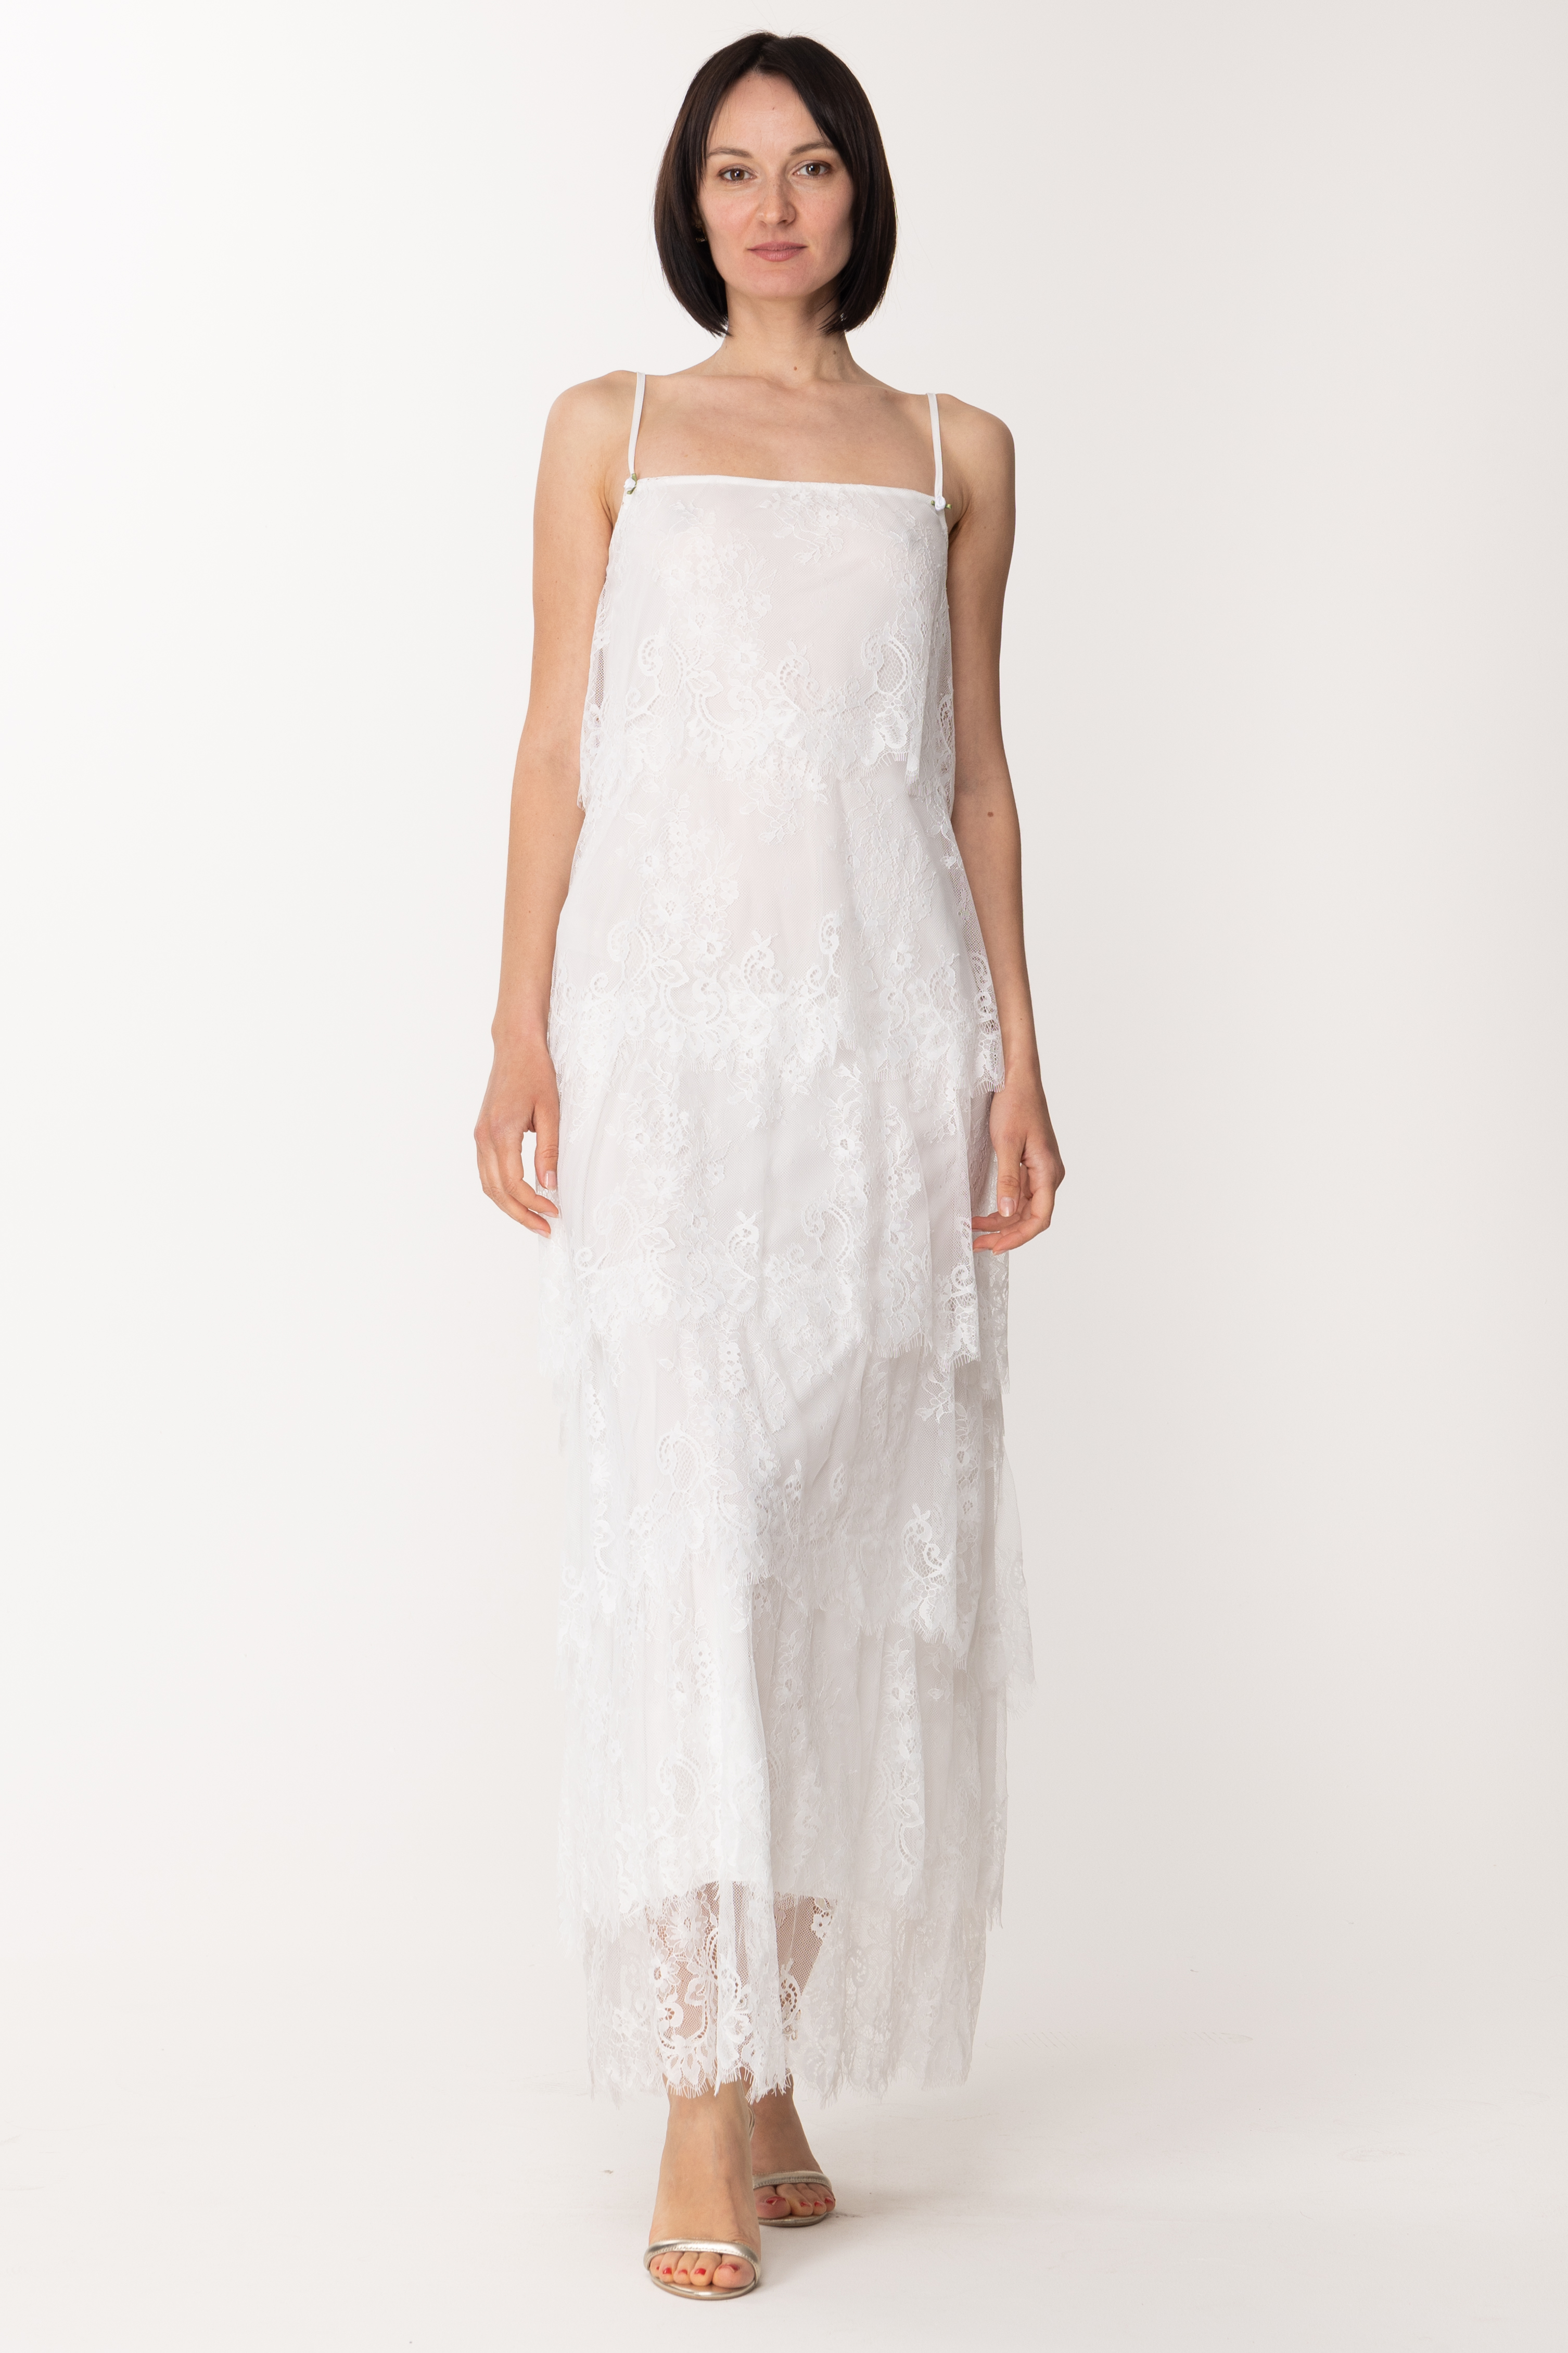 Podgląd: Aniye By Gil długa suknia z koronkowymi falbankami WHITE